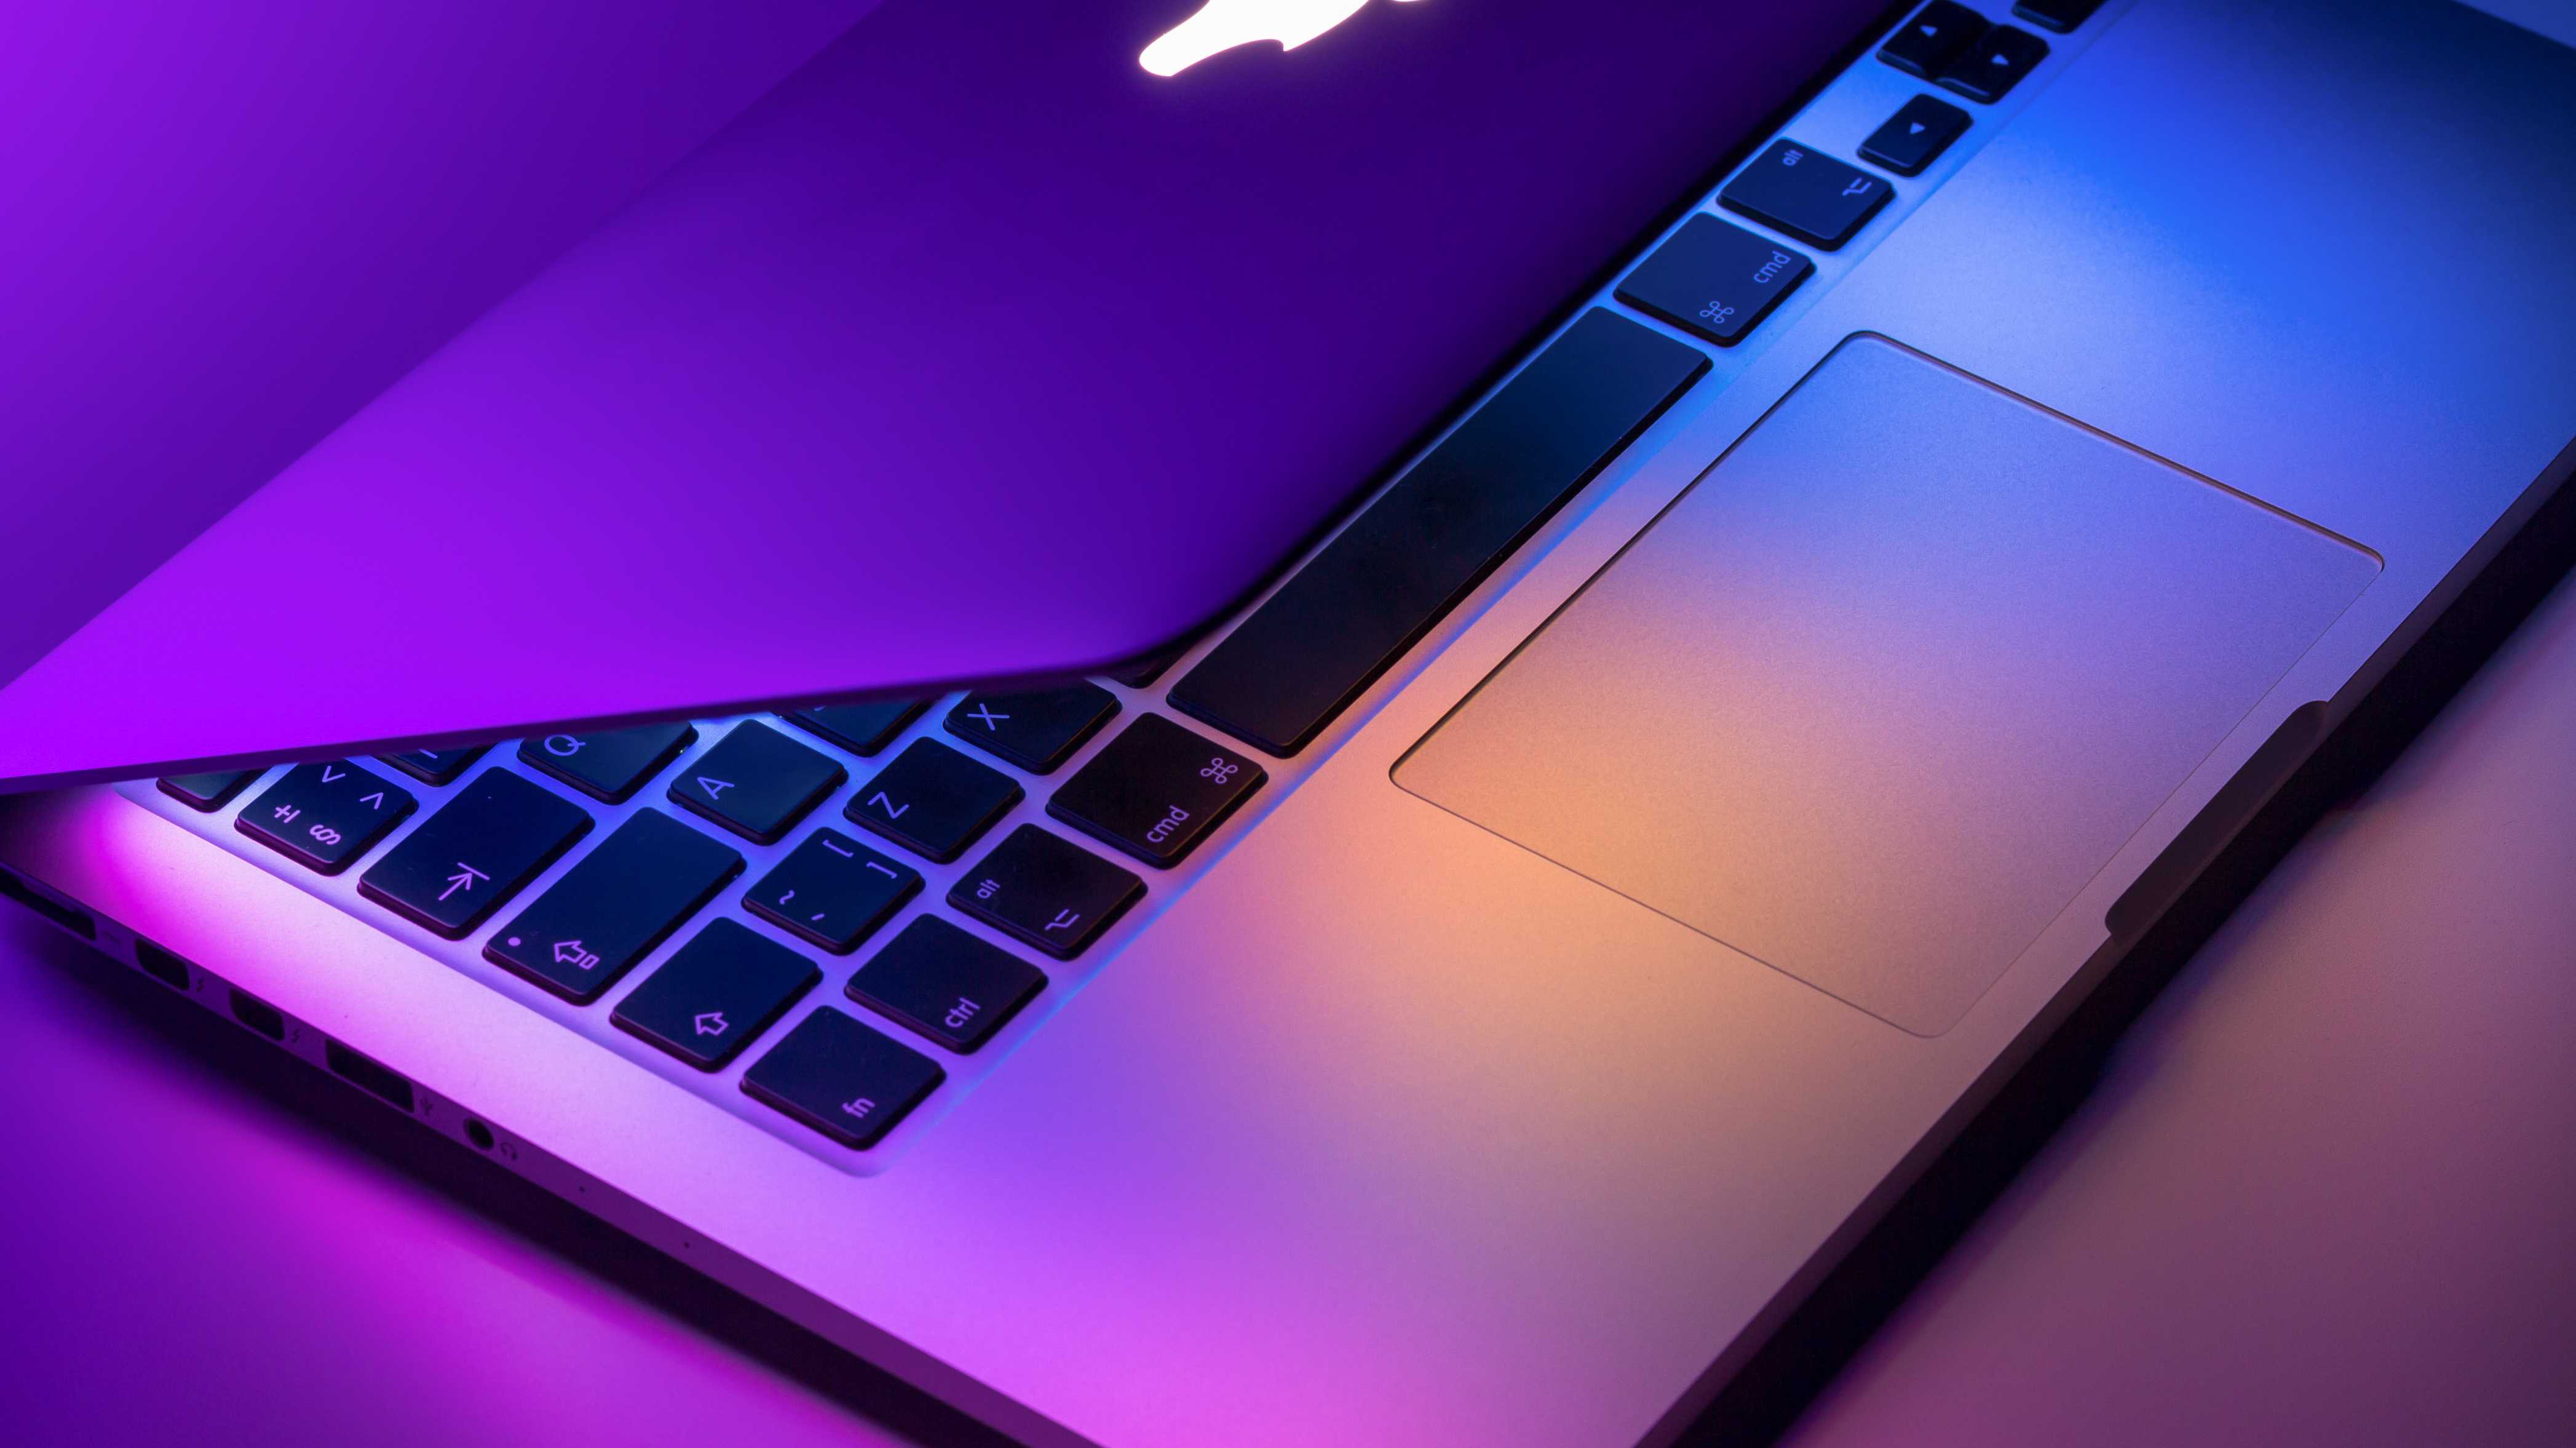 Leicht geöffnetes Macbook Pro auf einem Schreibtisch